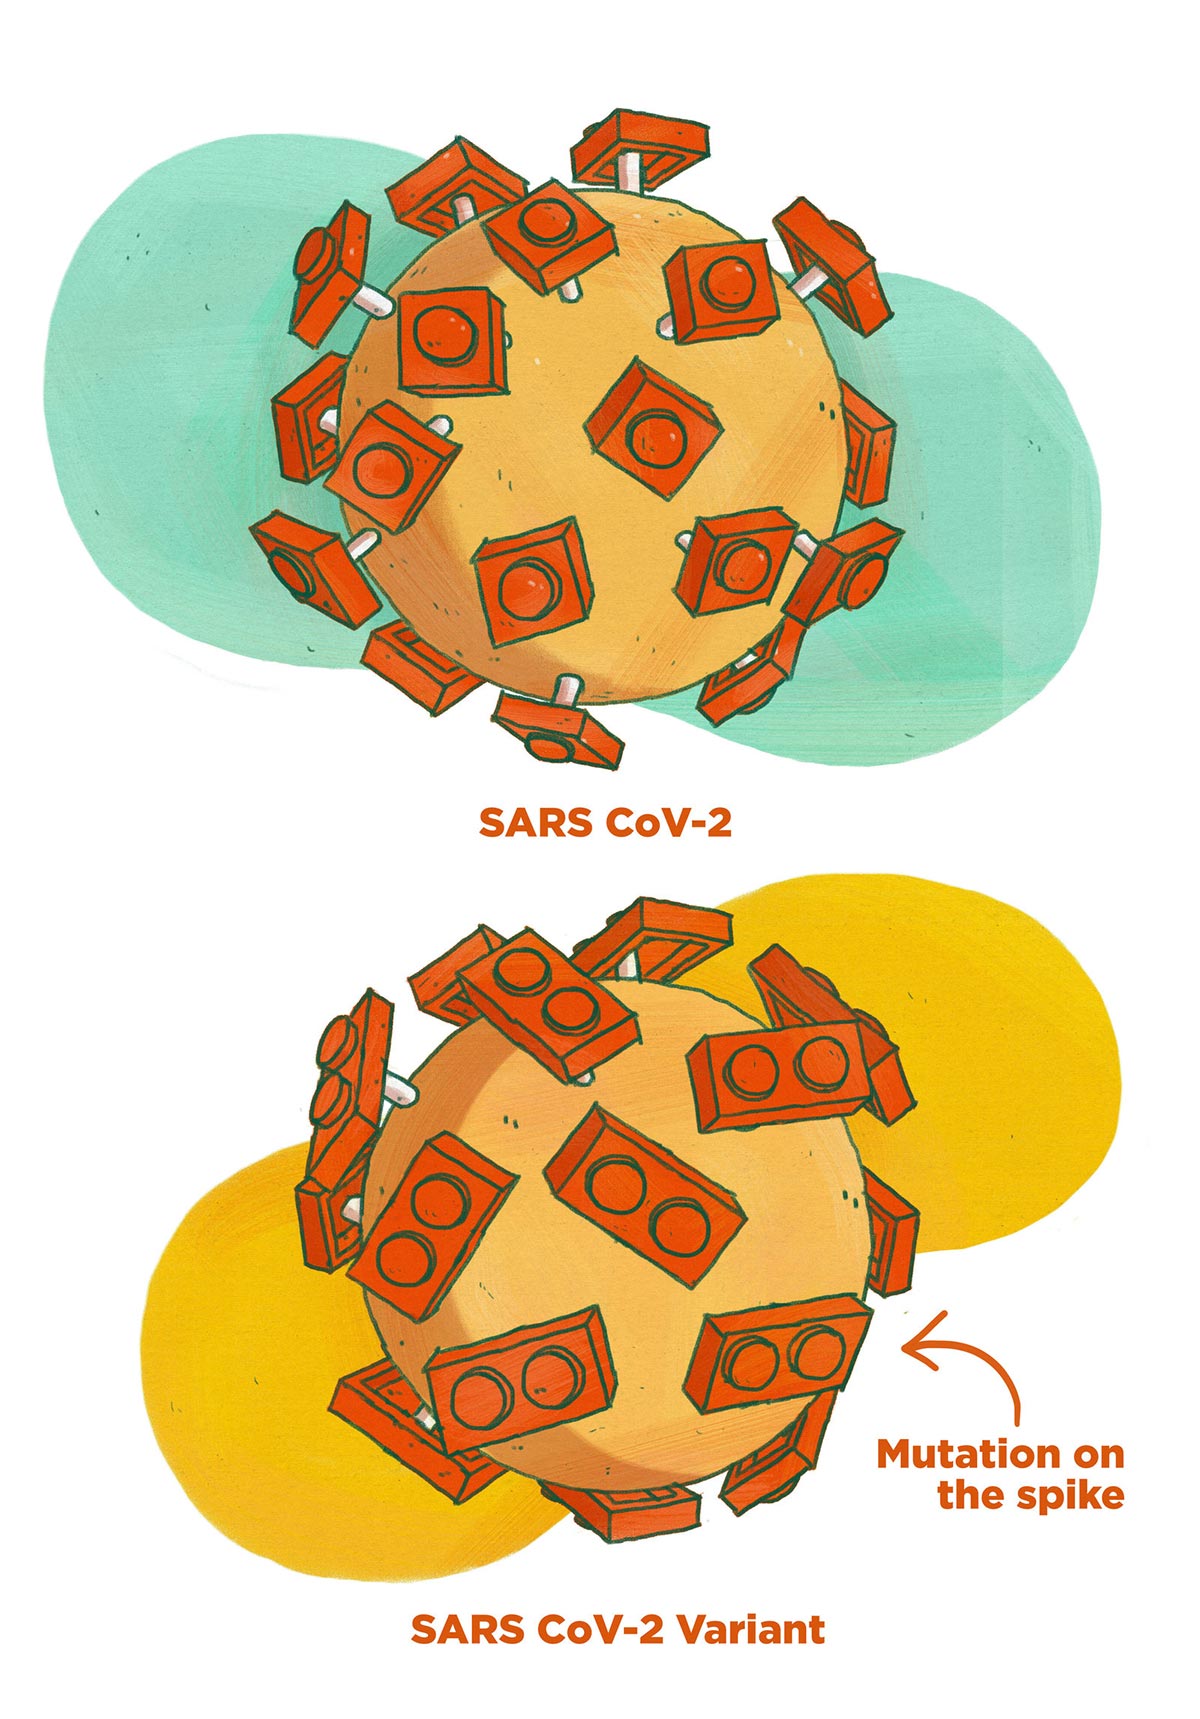 Le varianti di SARS-CoV-2 disegnate da Meredith Miotke